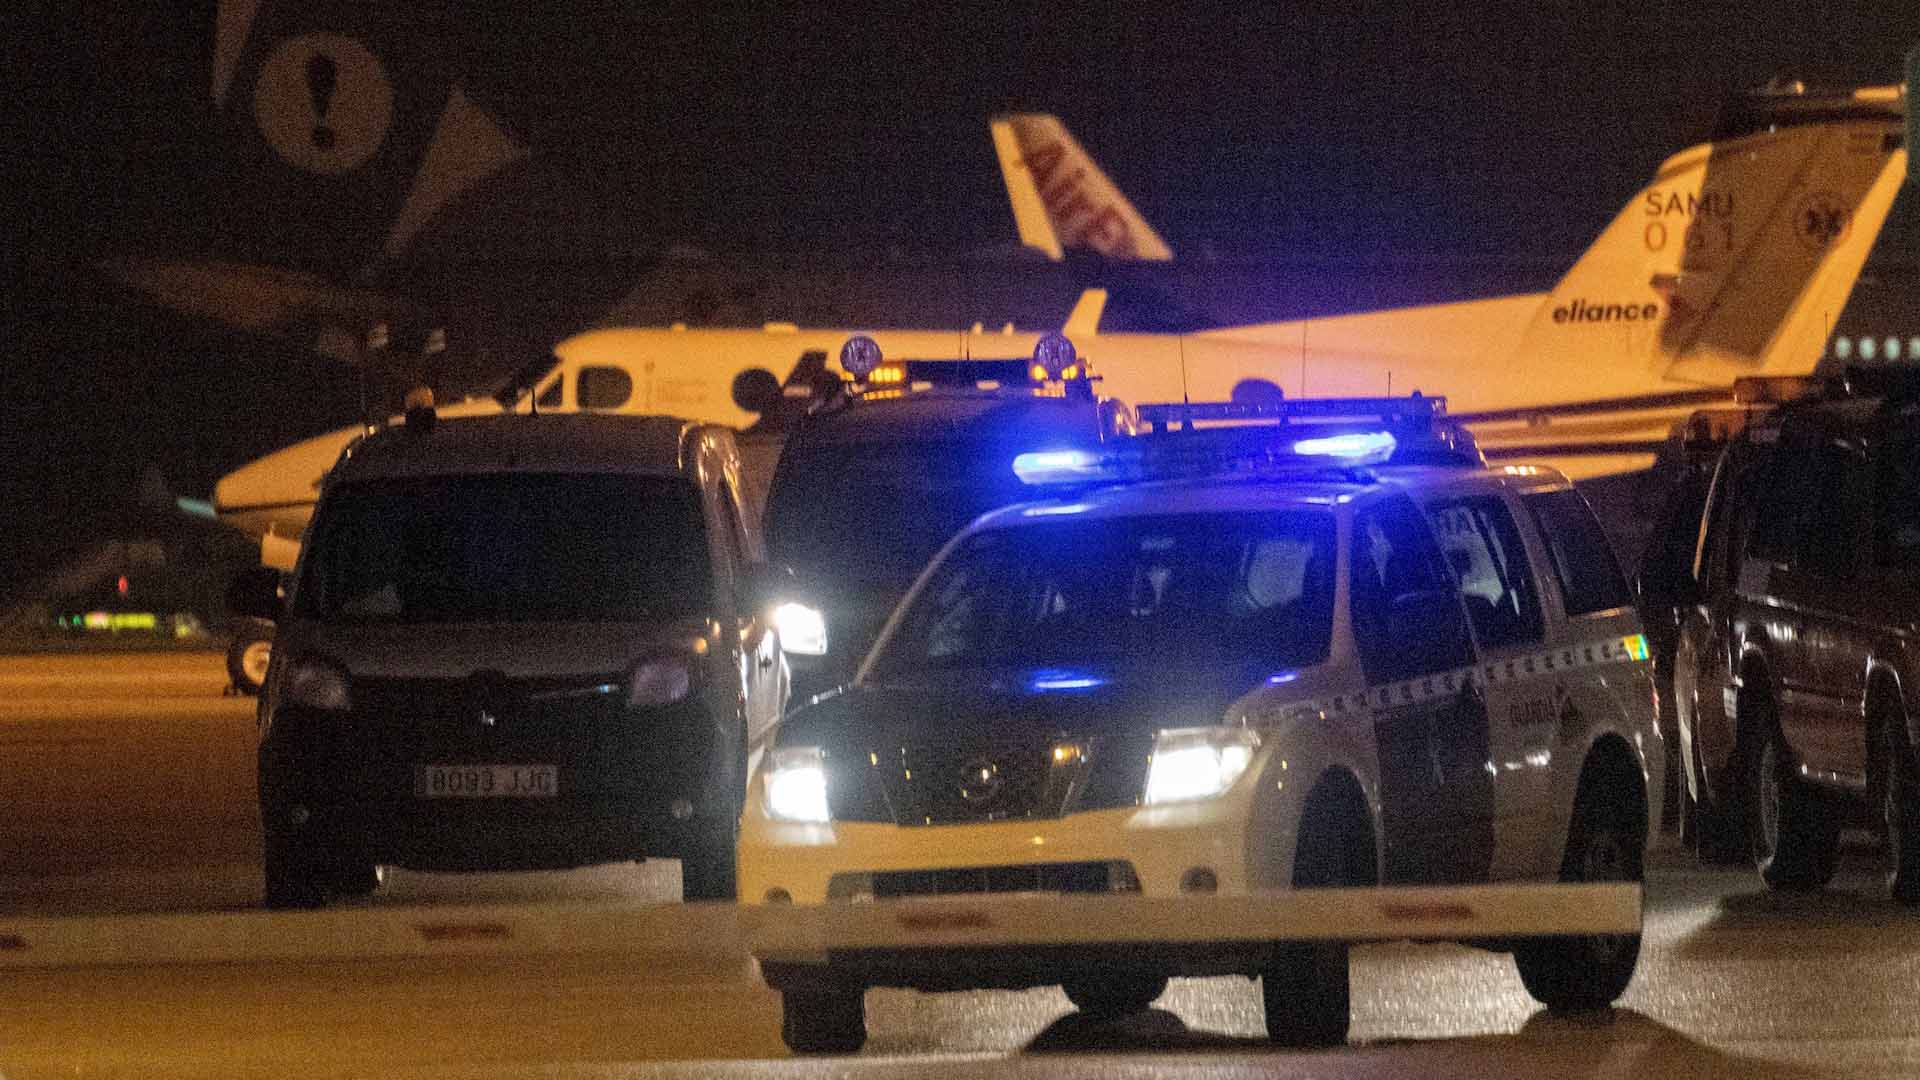 La Policía atribuye sedición, entrada ilegal y desorden a los huidos del avión de Palma